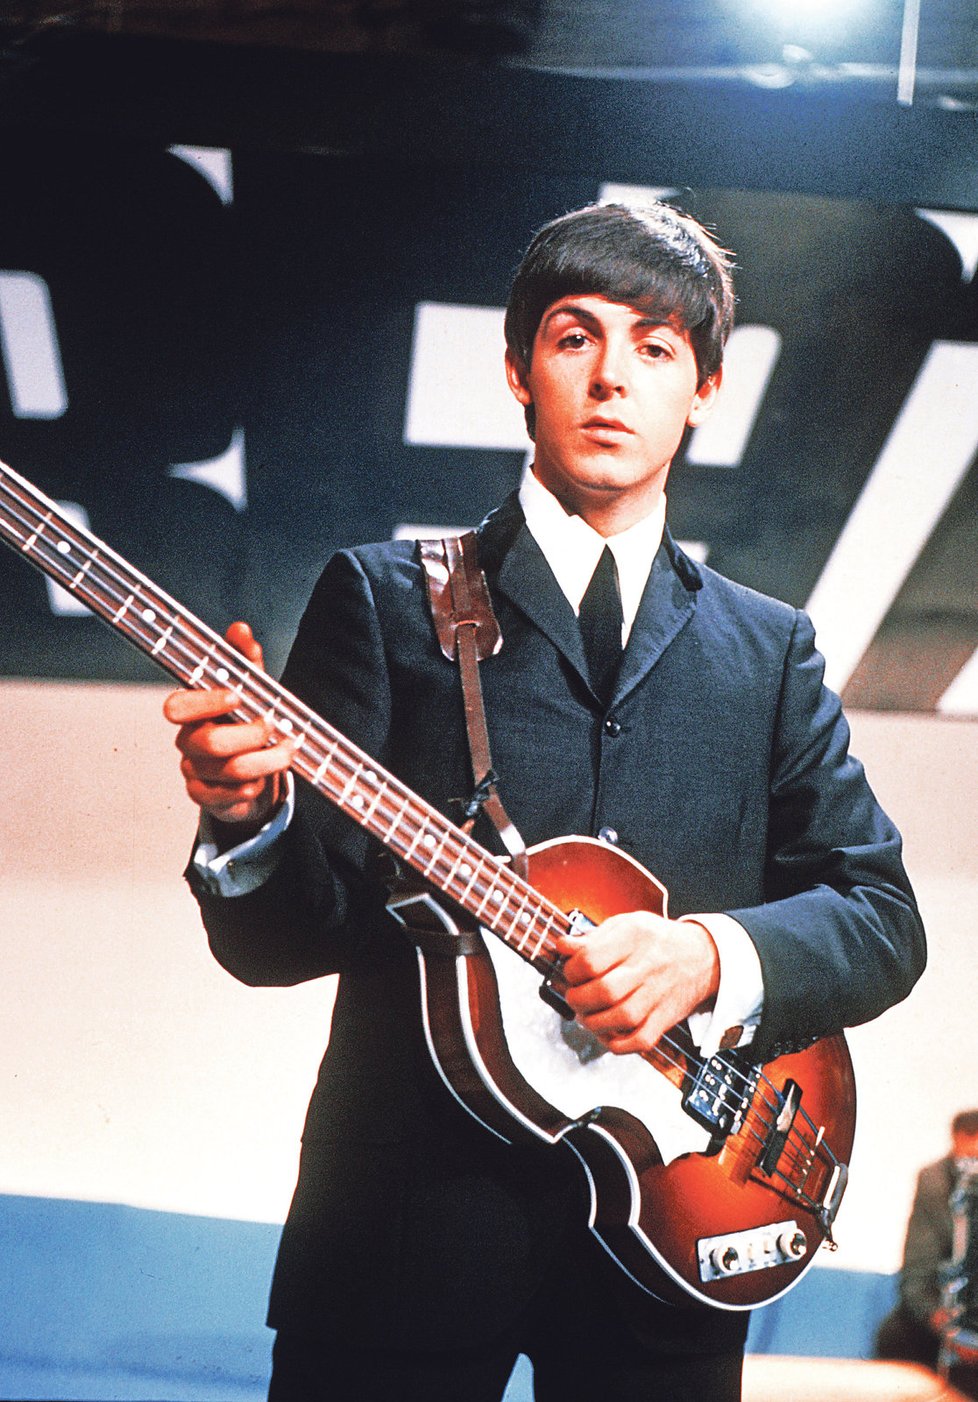 Hvězda Beatles: Paul McCartney v dobách své největší slávy